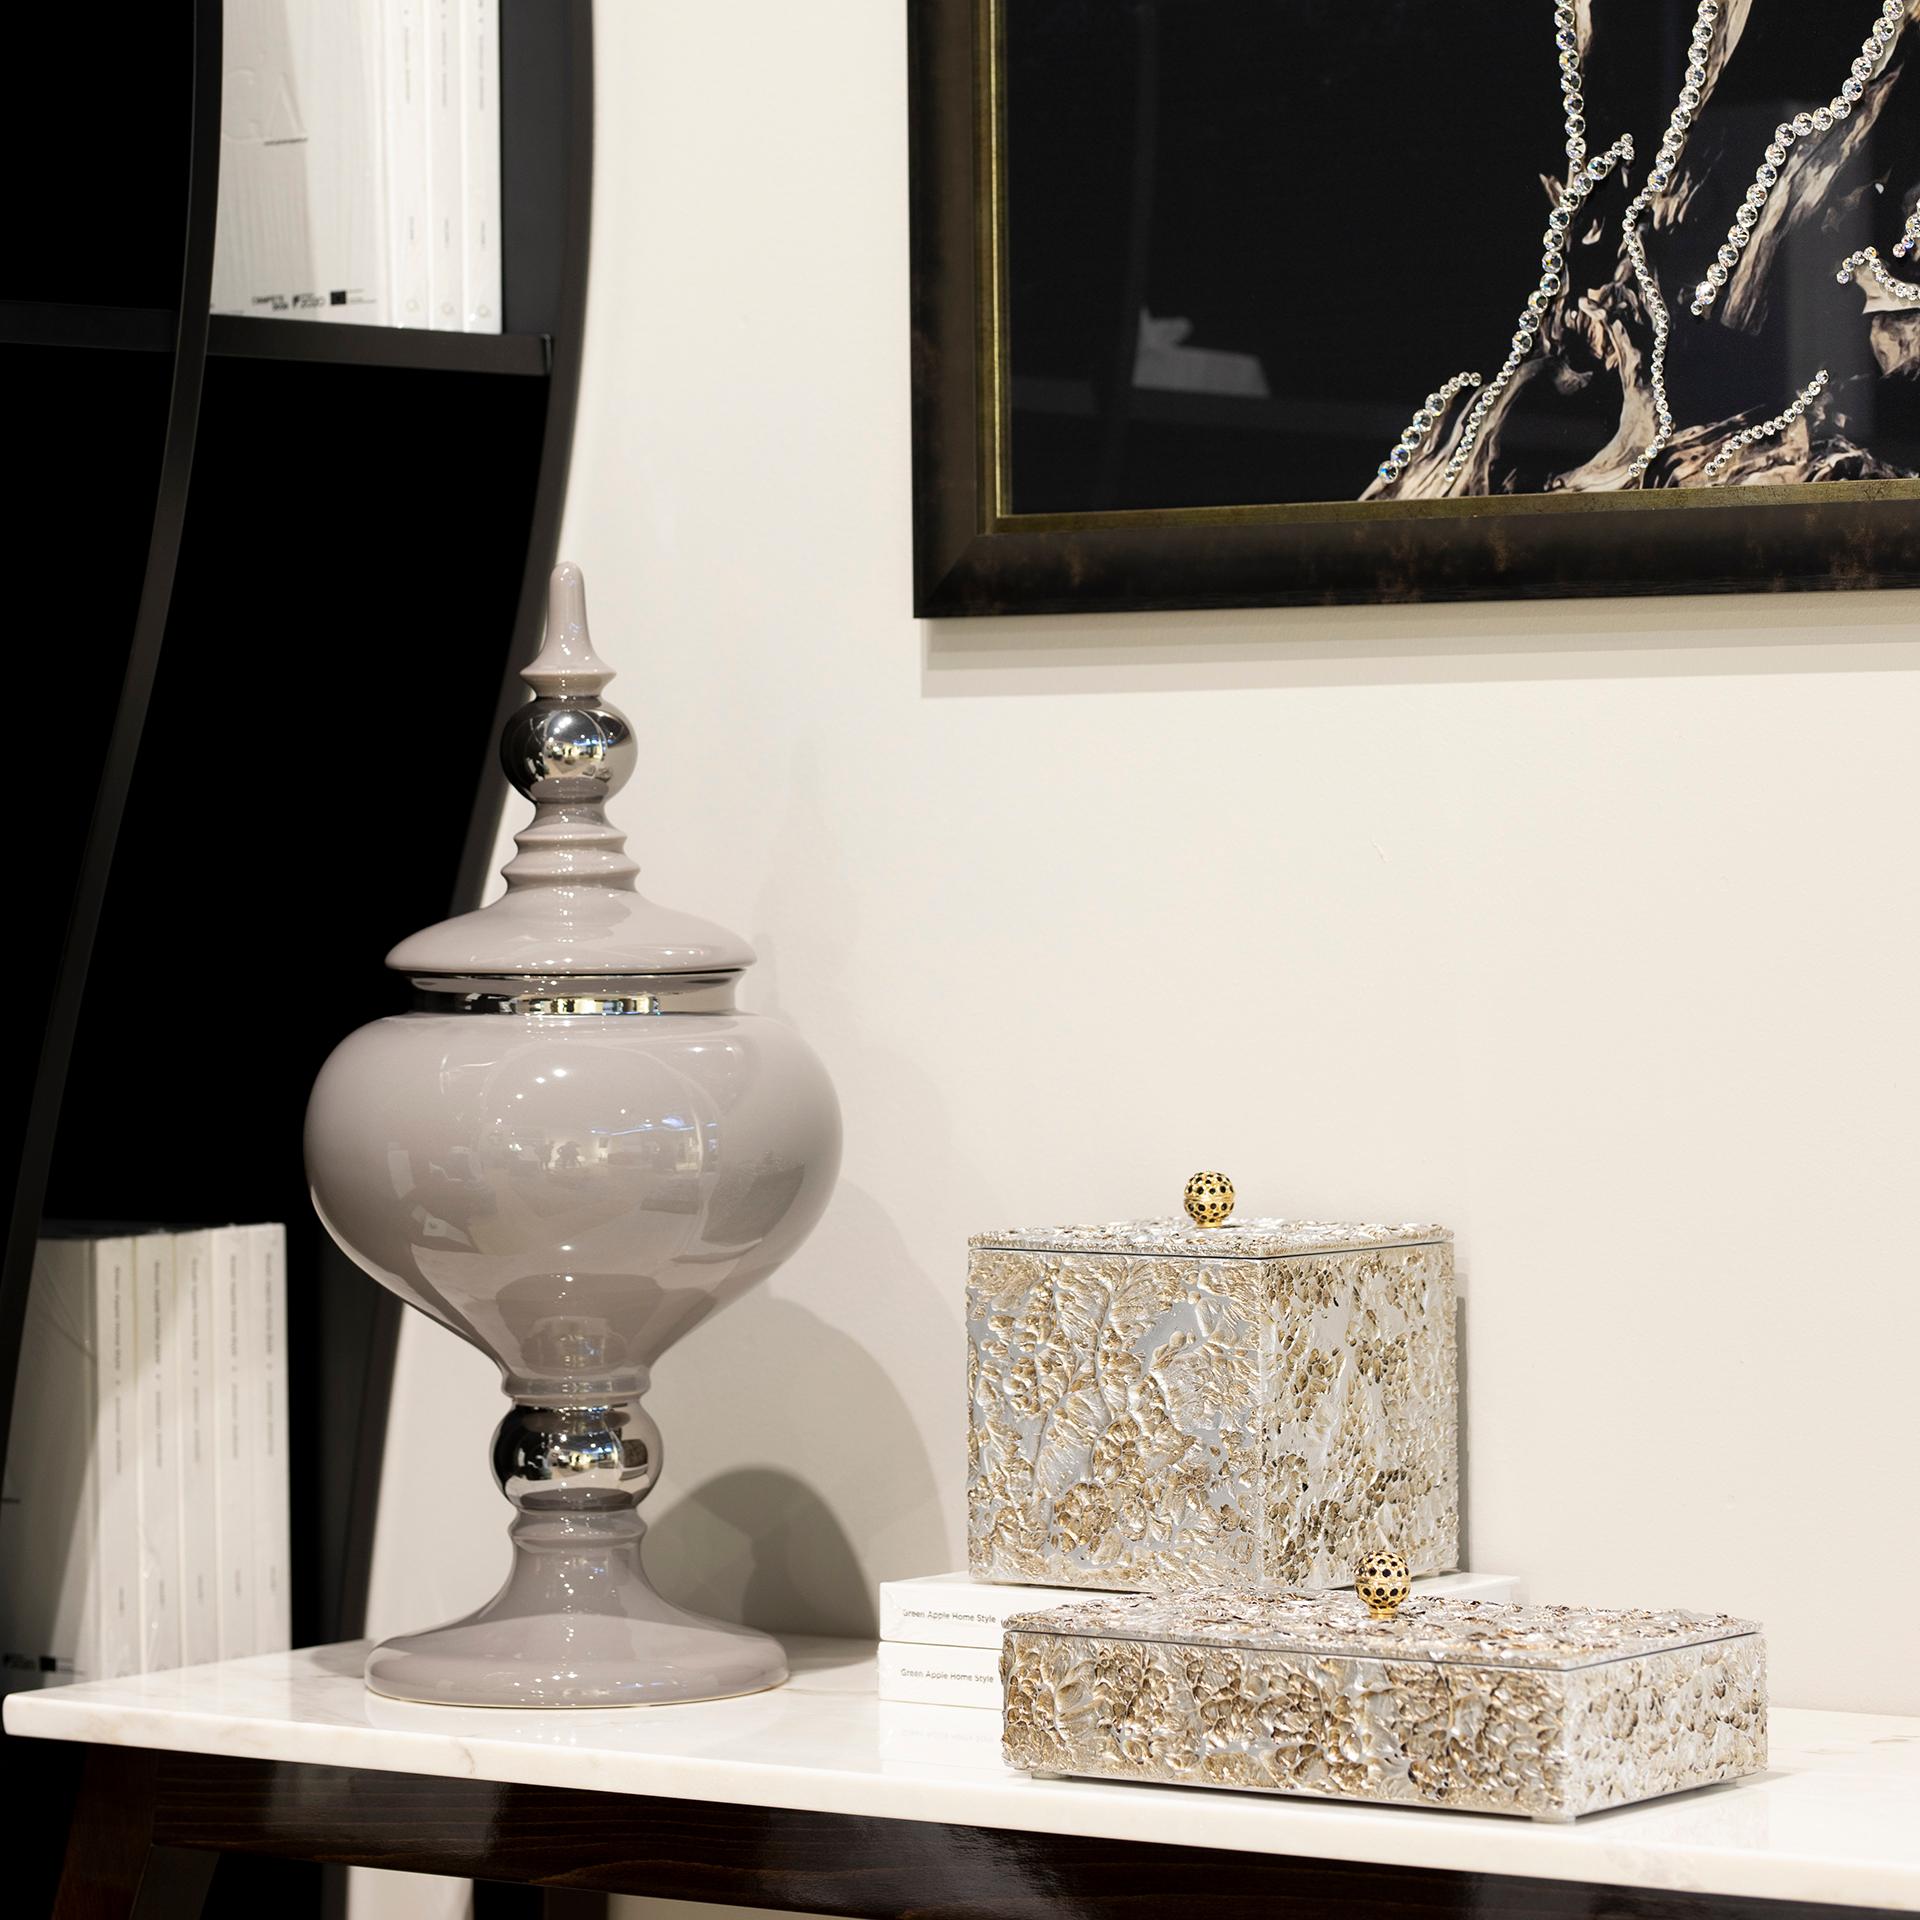 Dekorative Stücke von Serafim, Rocha und Alcobaça, Lusitanus Home Collection, handgefertigt in Portugal - Europa von Lusitanus Home.

Dieses schöne Set besteht aus einem wasserdichten Keramiktopf mit Deckel und zwei Keramikdekorationen, die zusammen